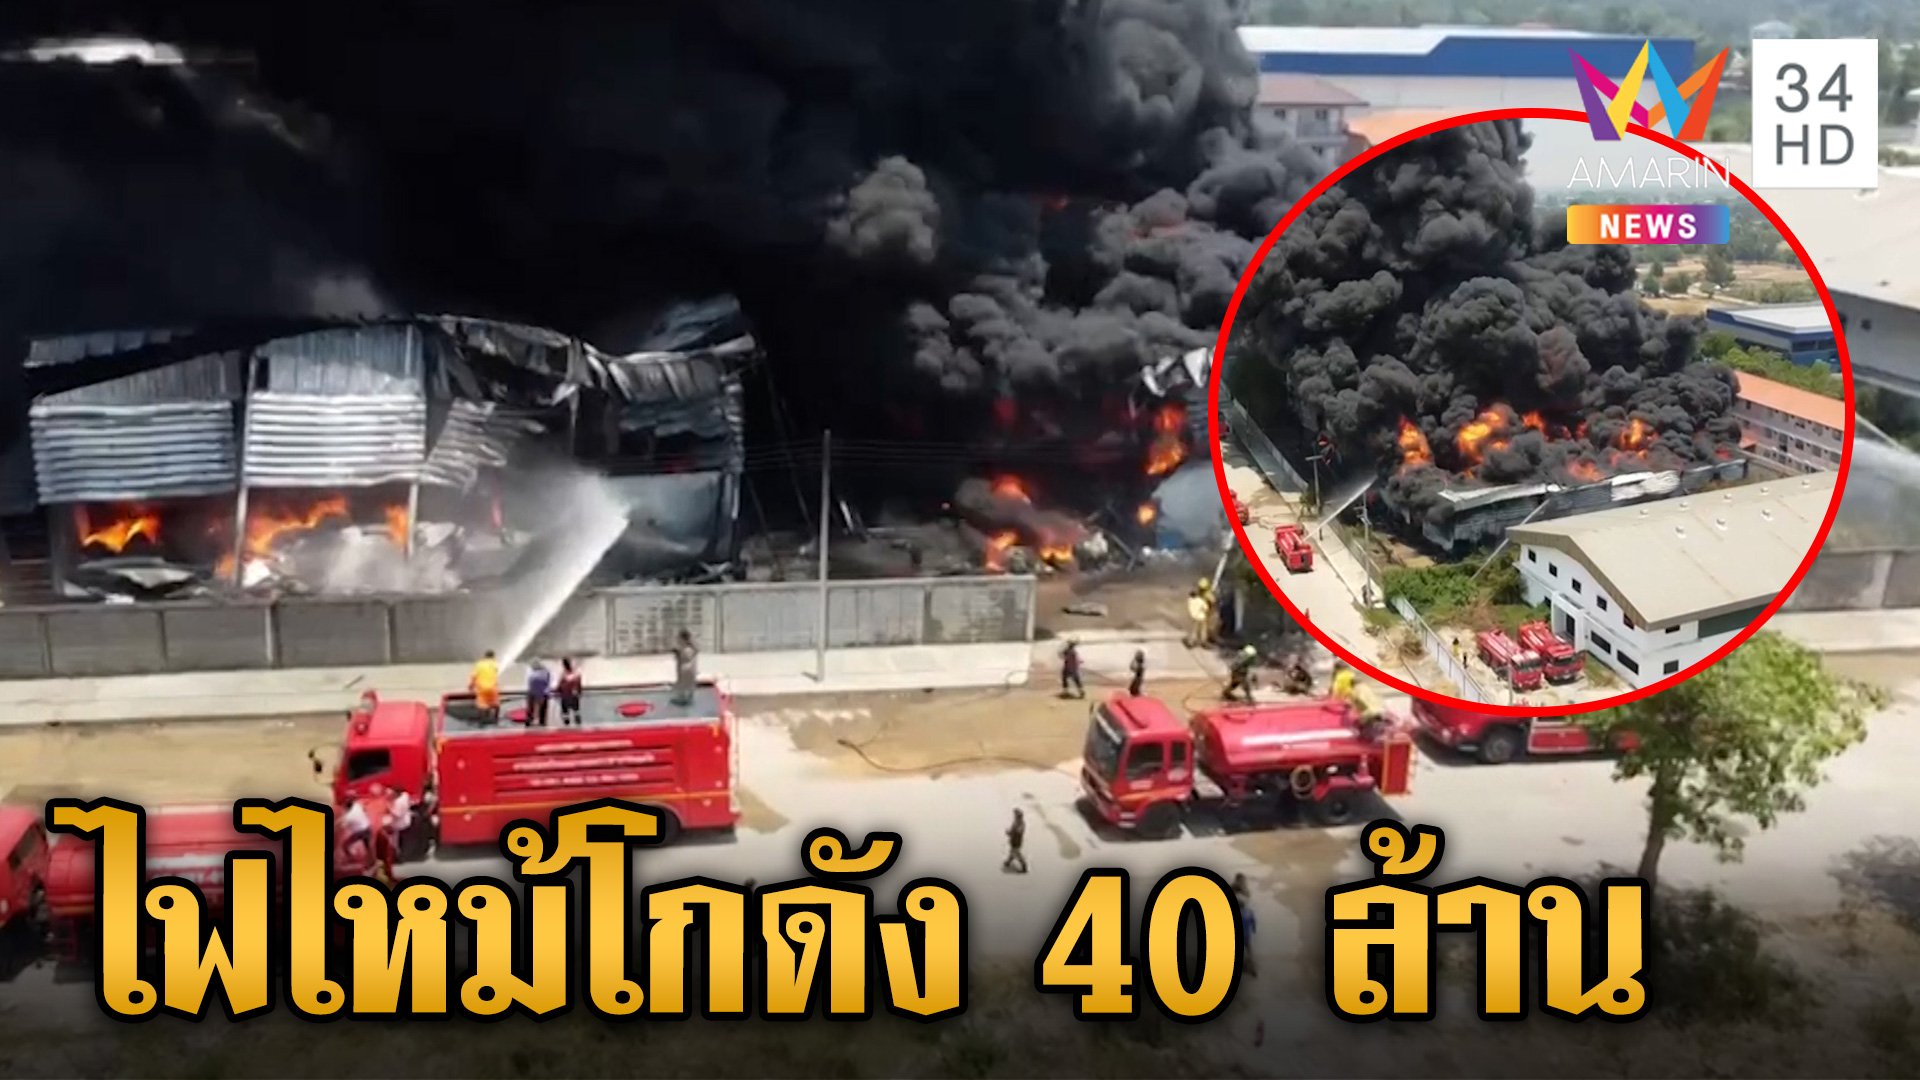 ไฟไหม้โกดังที่นอนเมืองกรุงเก่า วอดเสียหายเบื้องต้น 40 ล้านบาท | ข่าวเย็นอมรินทร์ | 30 เม.ย. 67 | AMARIN TVHD34